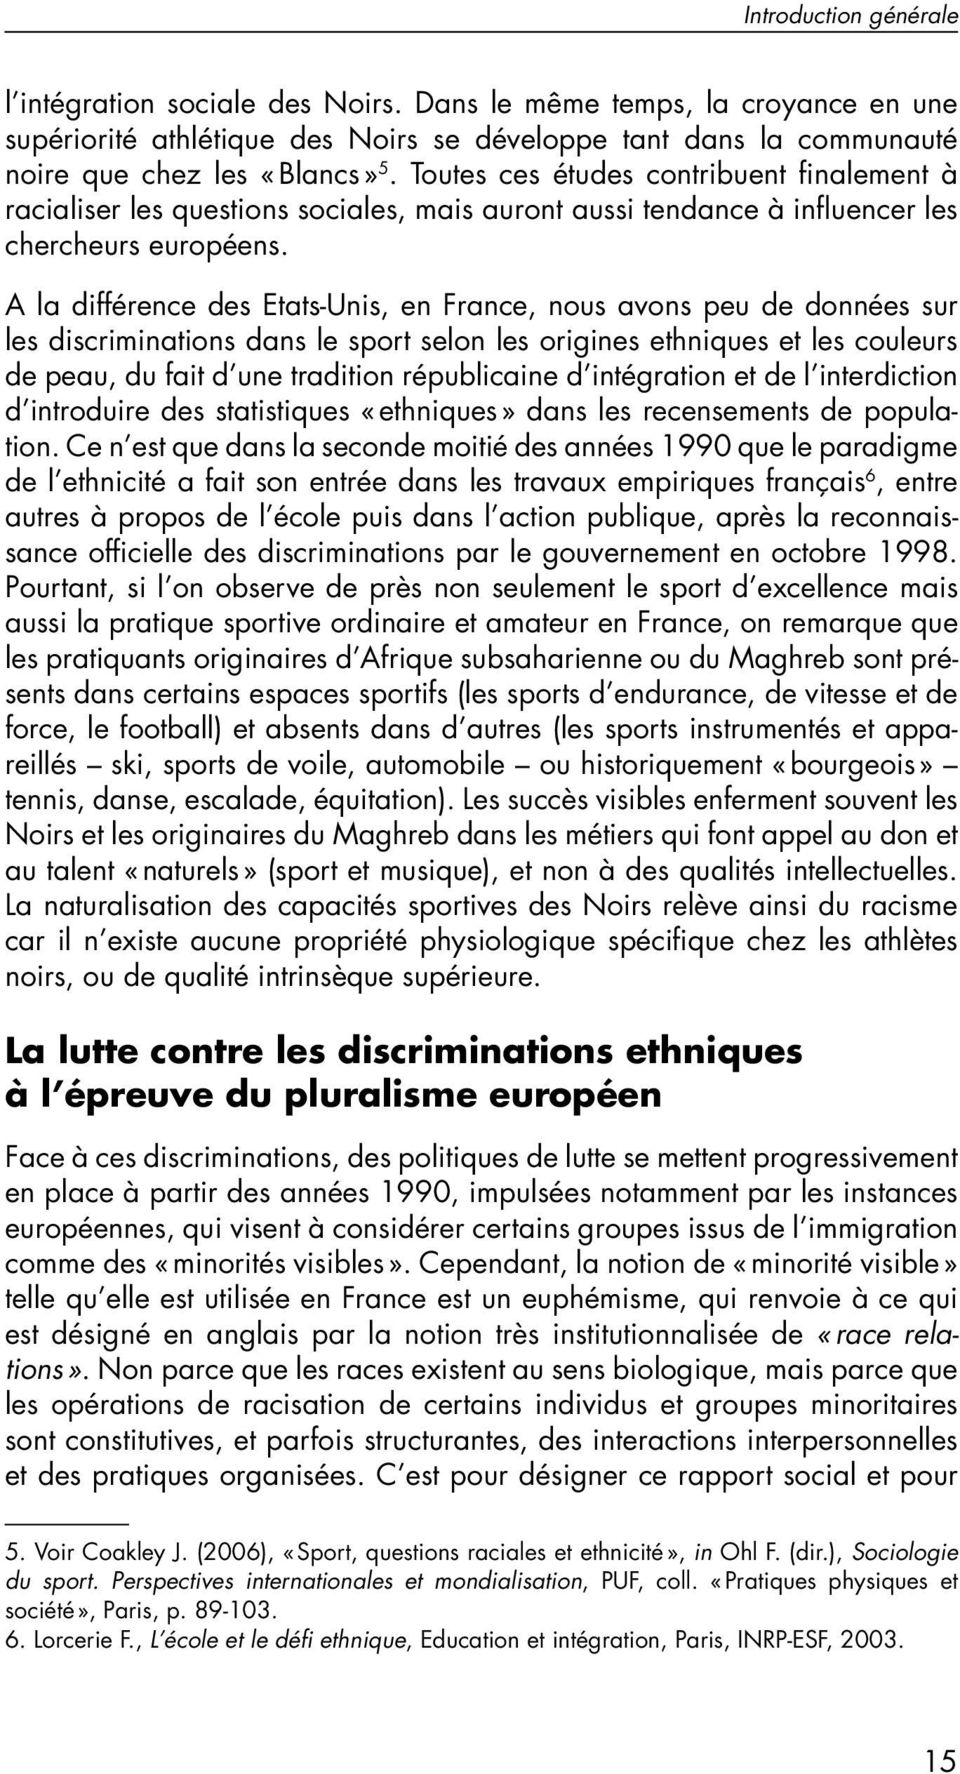 A la différence des Etats-Unis, en France, nous avons peu de données sur les discriminations dans le sport selon les origines ethniques et les couleurs de peau, du fait d une tradition républicaine d